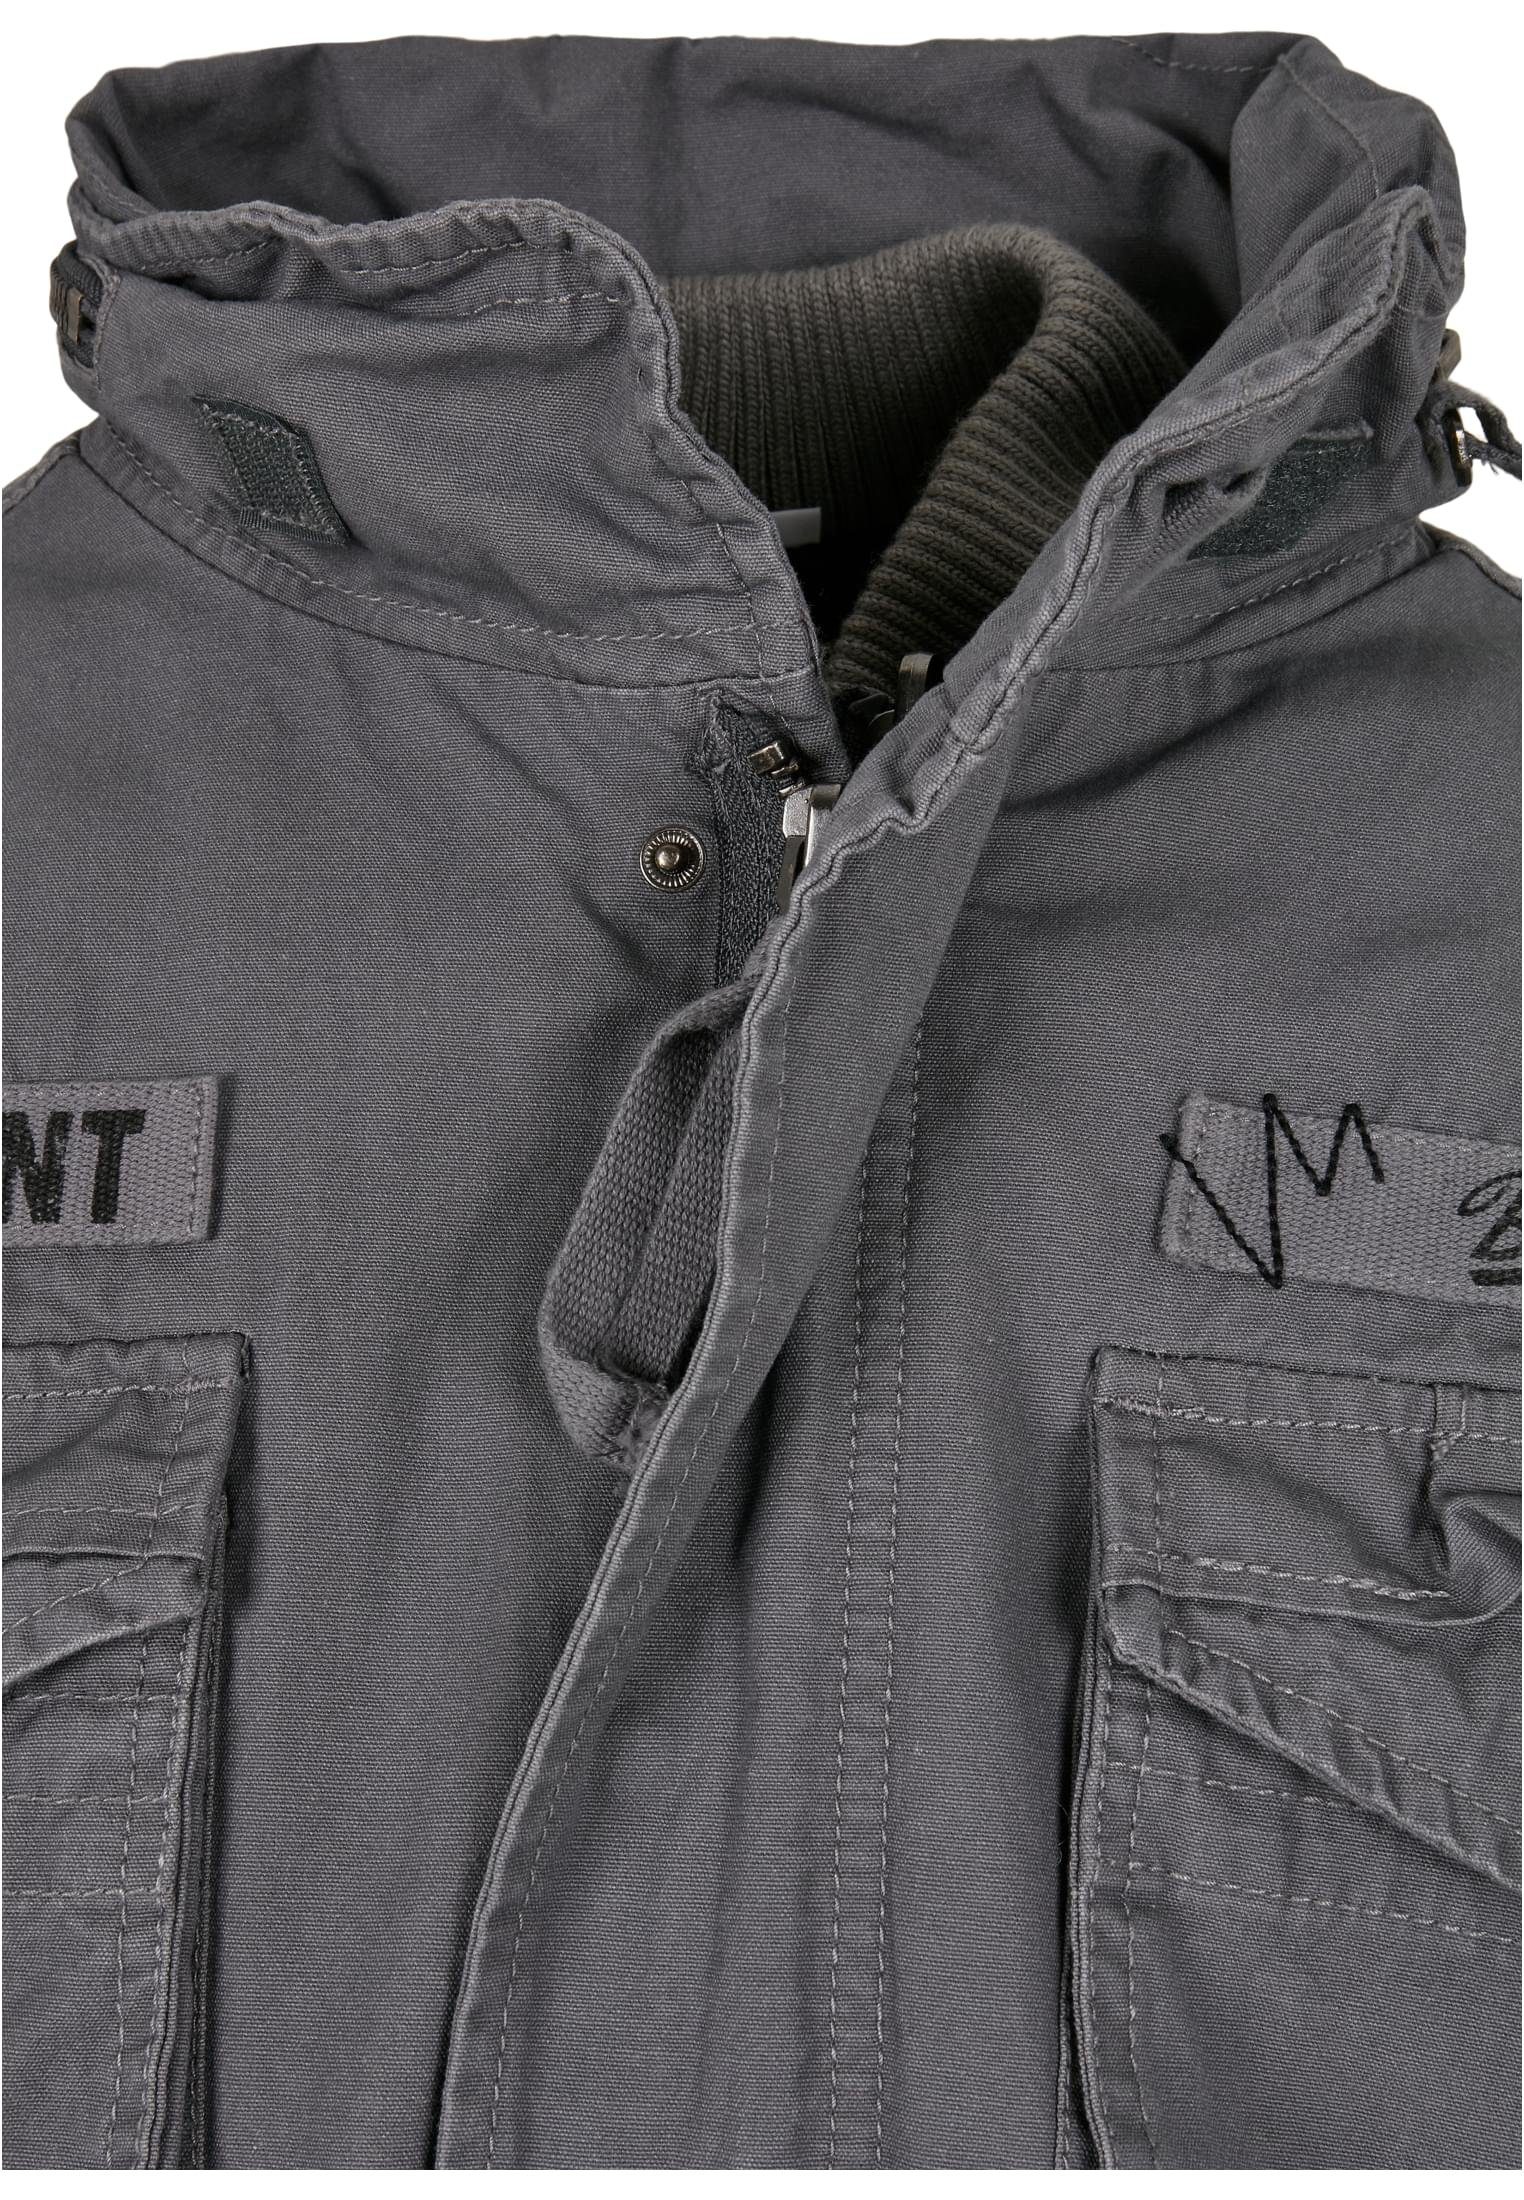 Giant grey Herren Wintermantel Jacket Brandit charcoal M-65